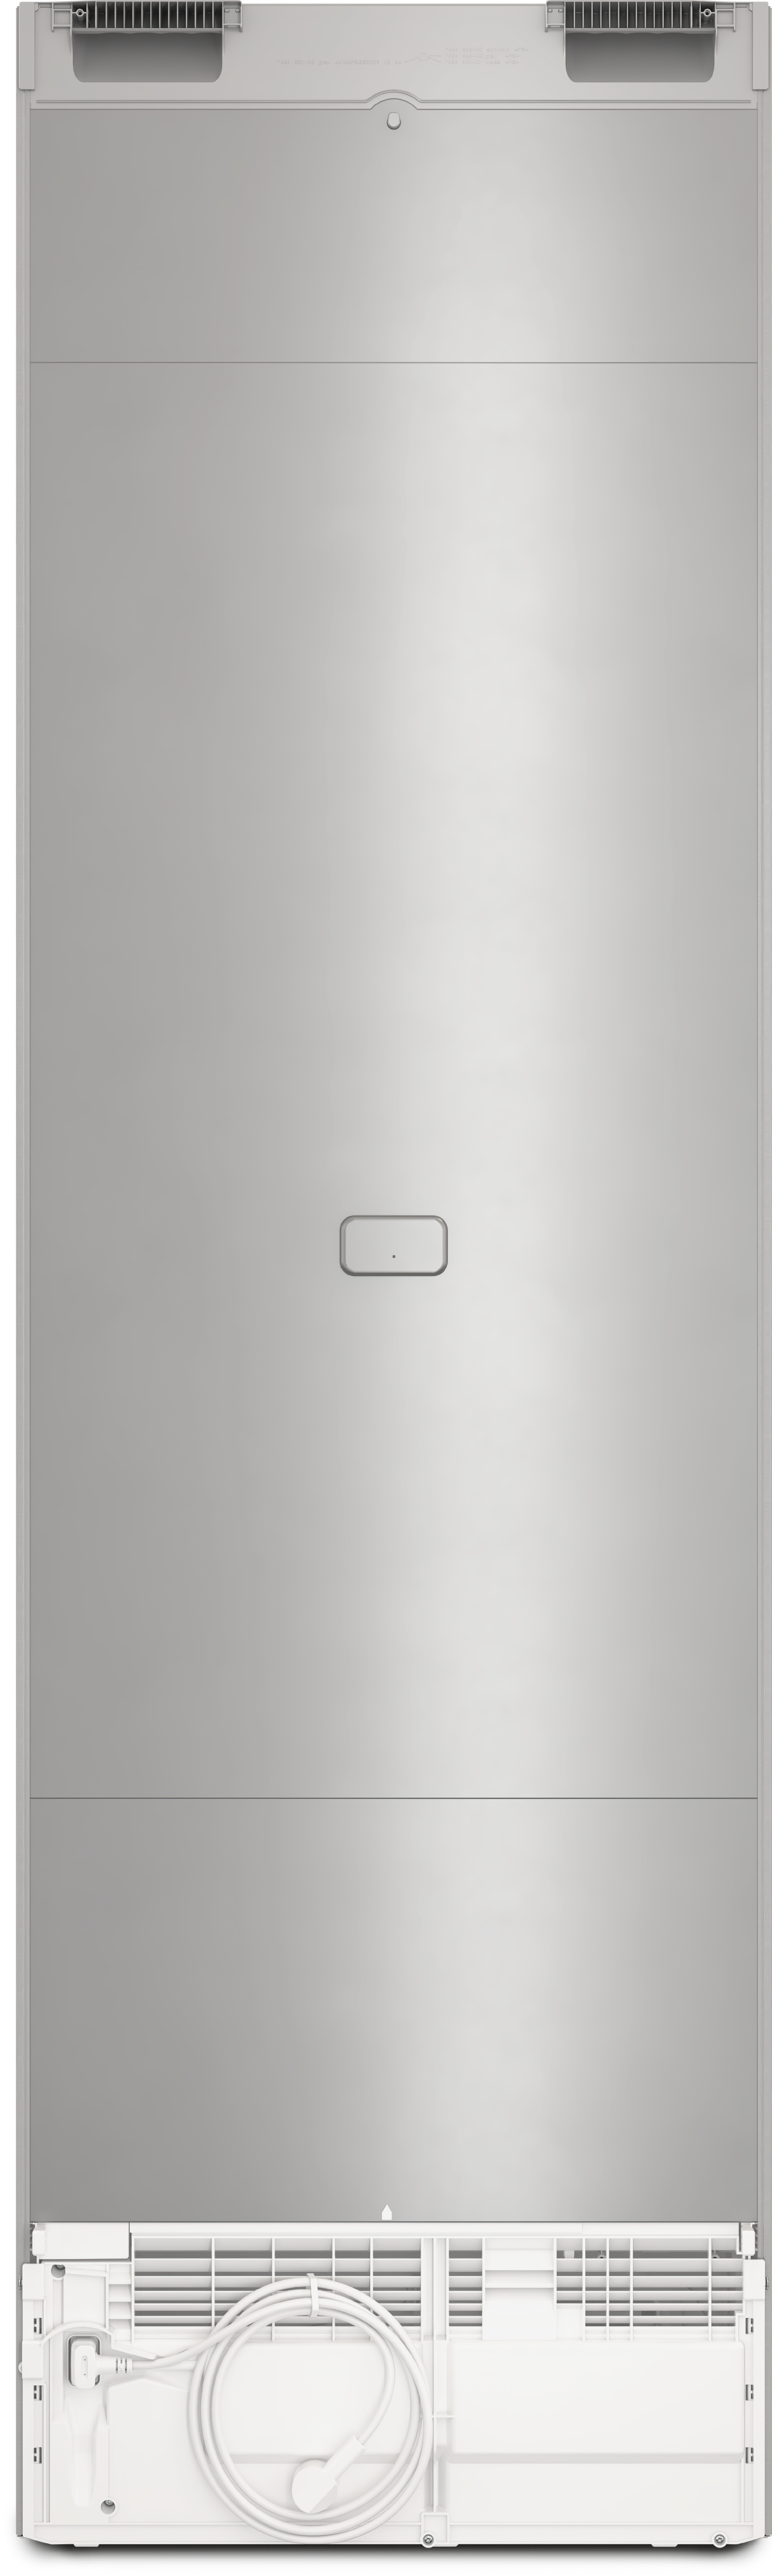 Refrigerare - KFN 4397 CD 125 Edition Aspect de inox - 4